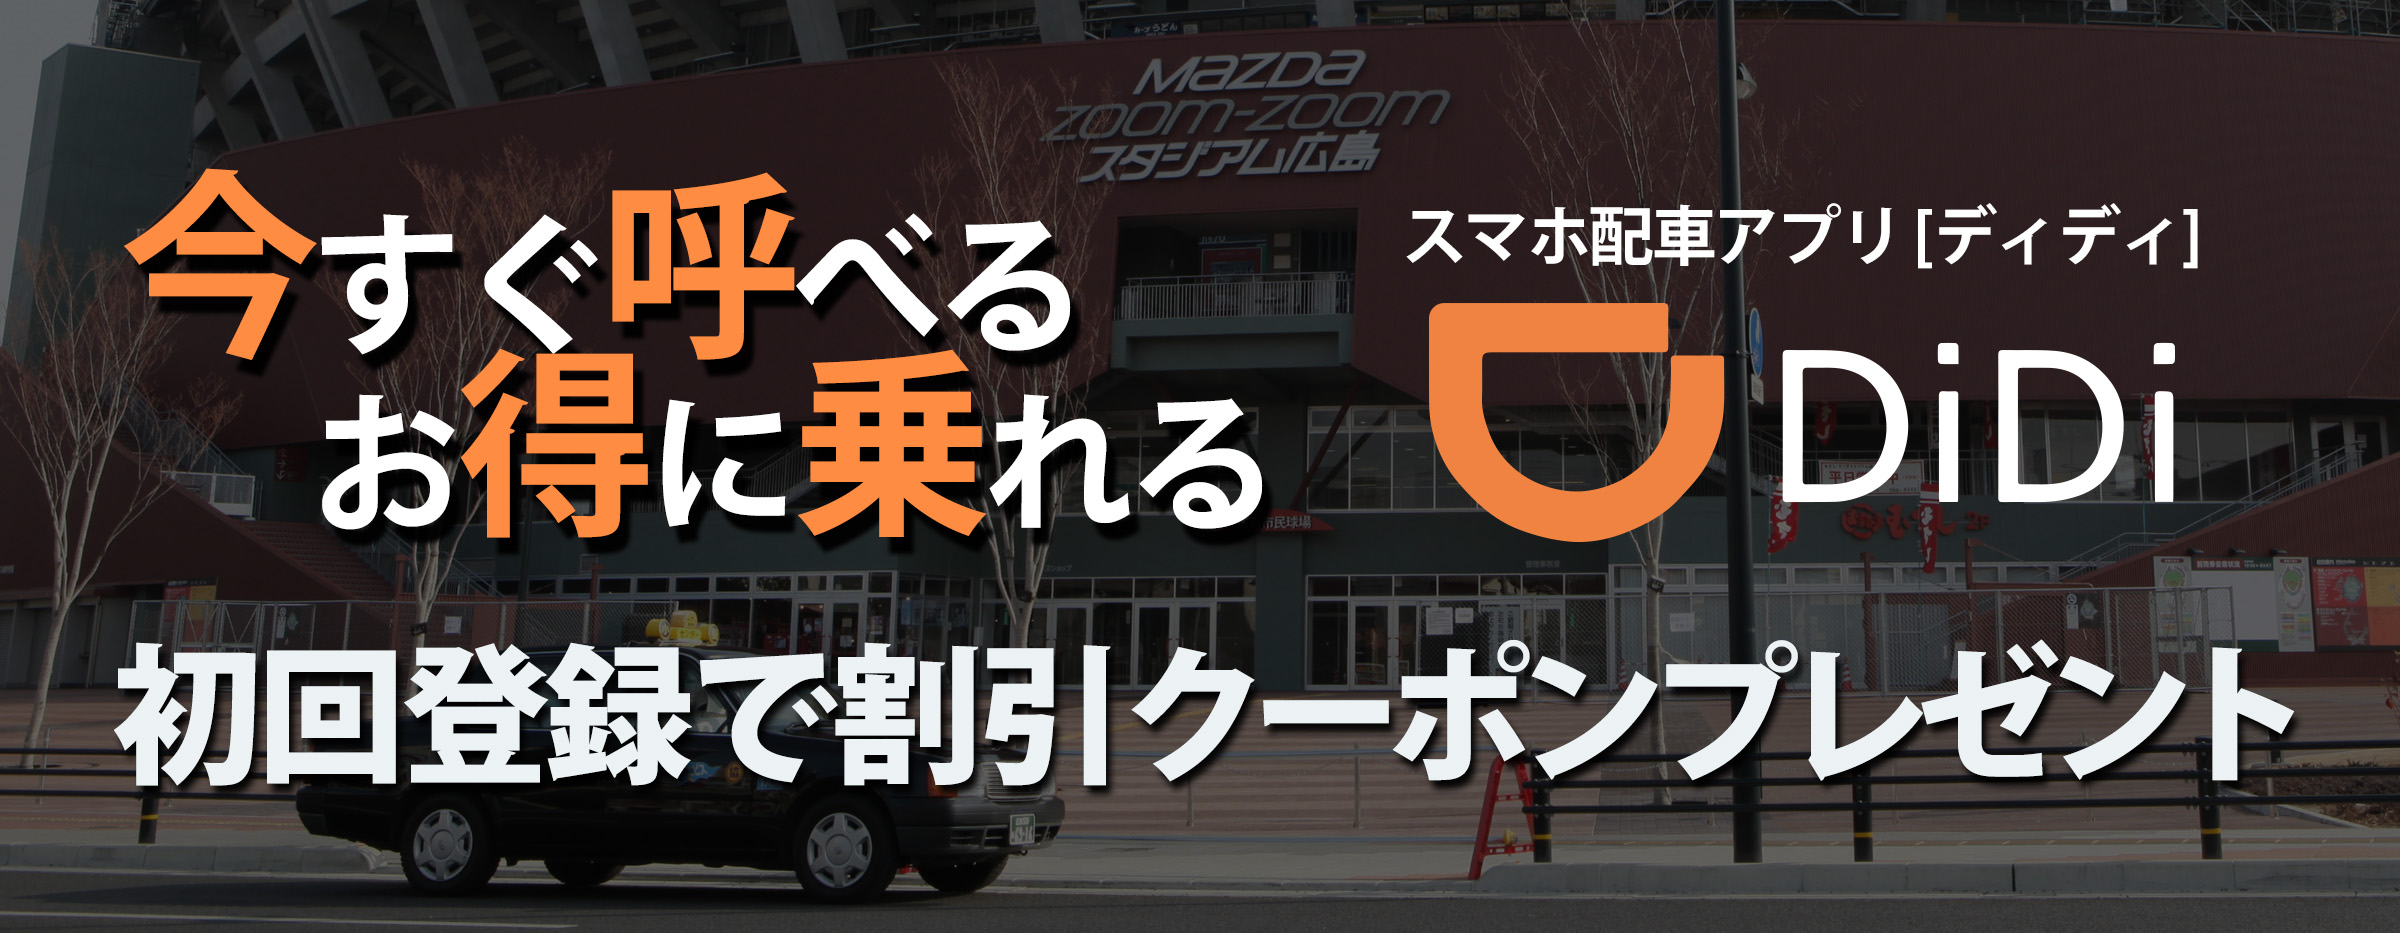 広島 タクシーセンター 採用情報 お祝い金 0 000